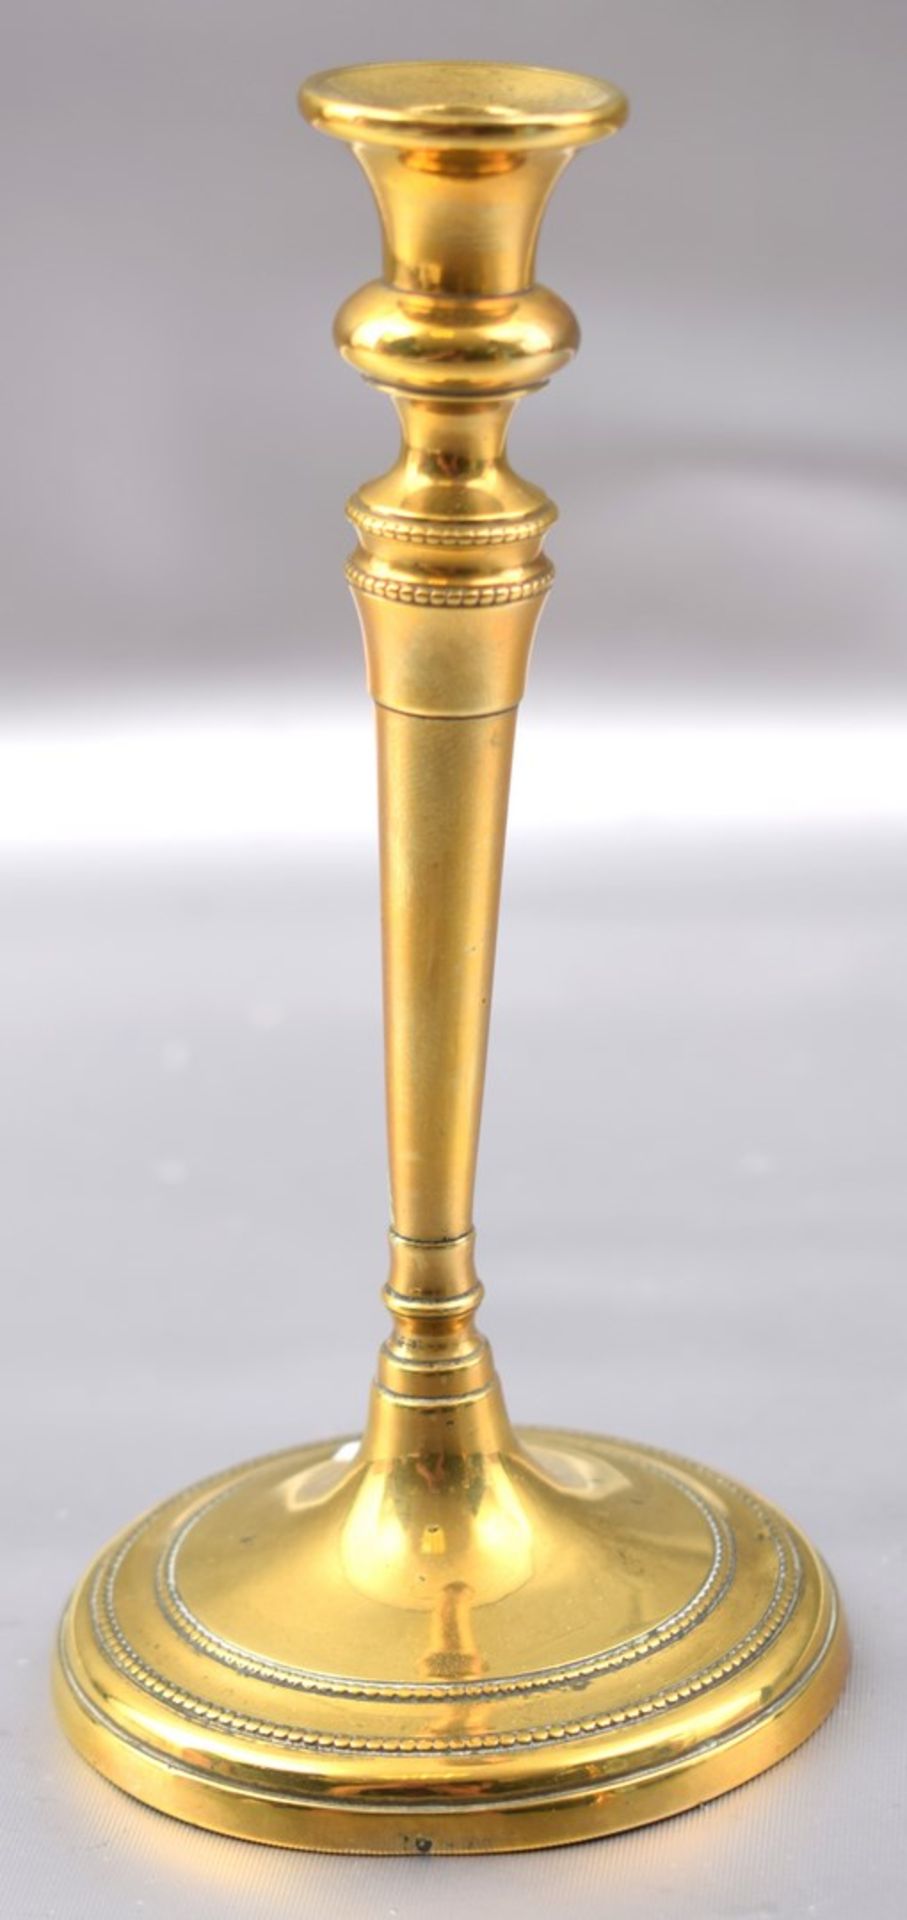 Biedermeier-Kerzenleuchter 1-lichtig, Messing, runder Fuß und Schaft, Perlrand, H 15 cm, 19. Jh.